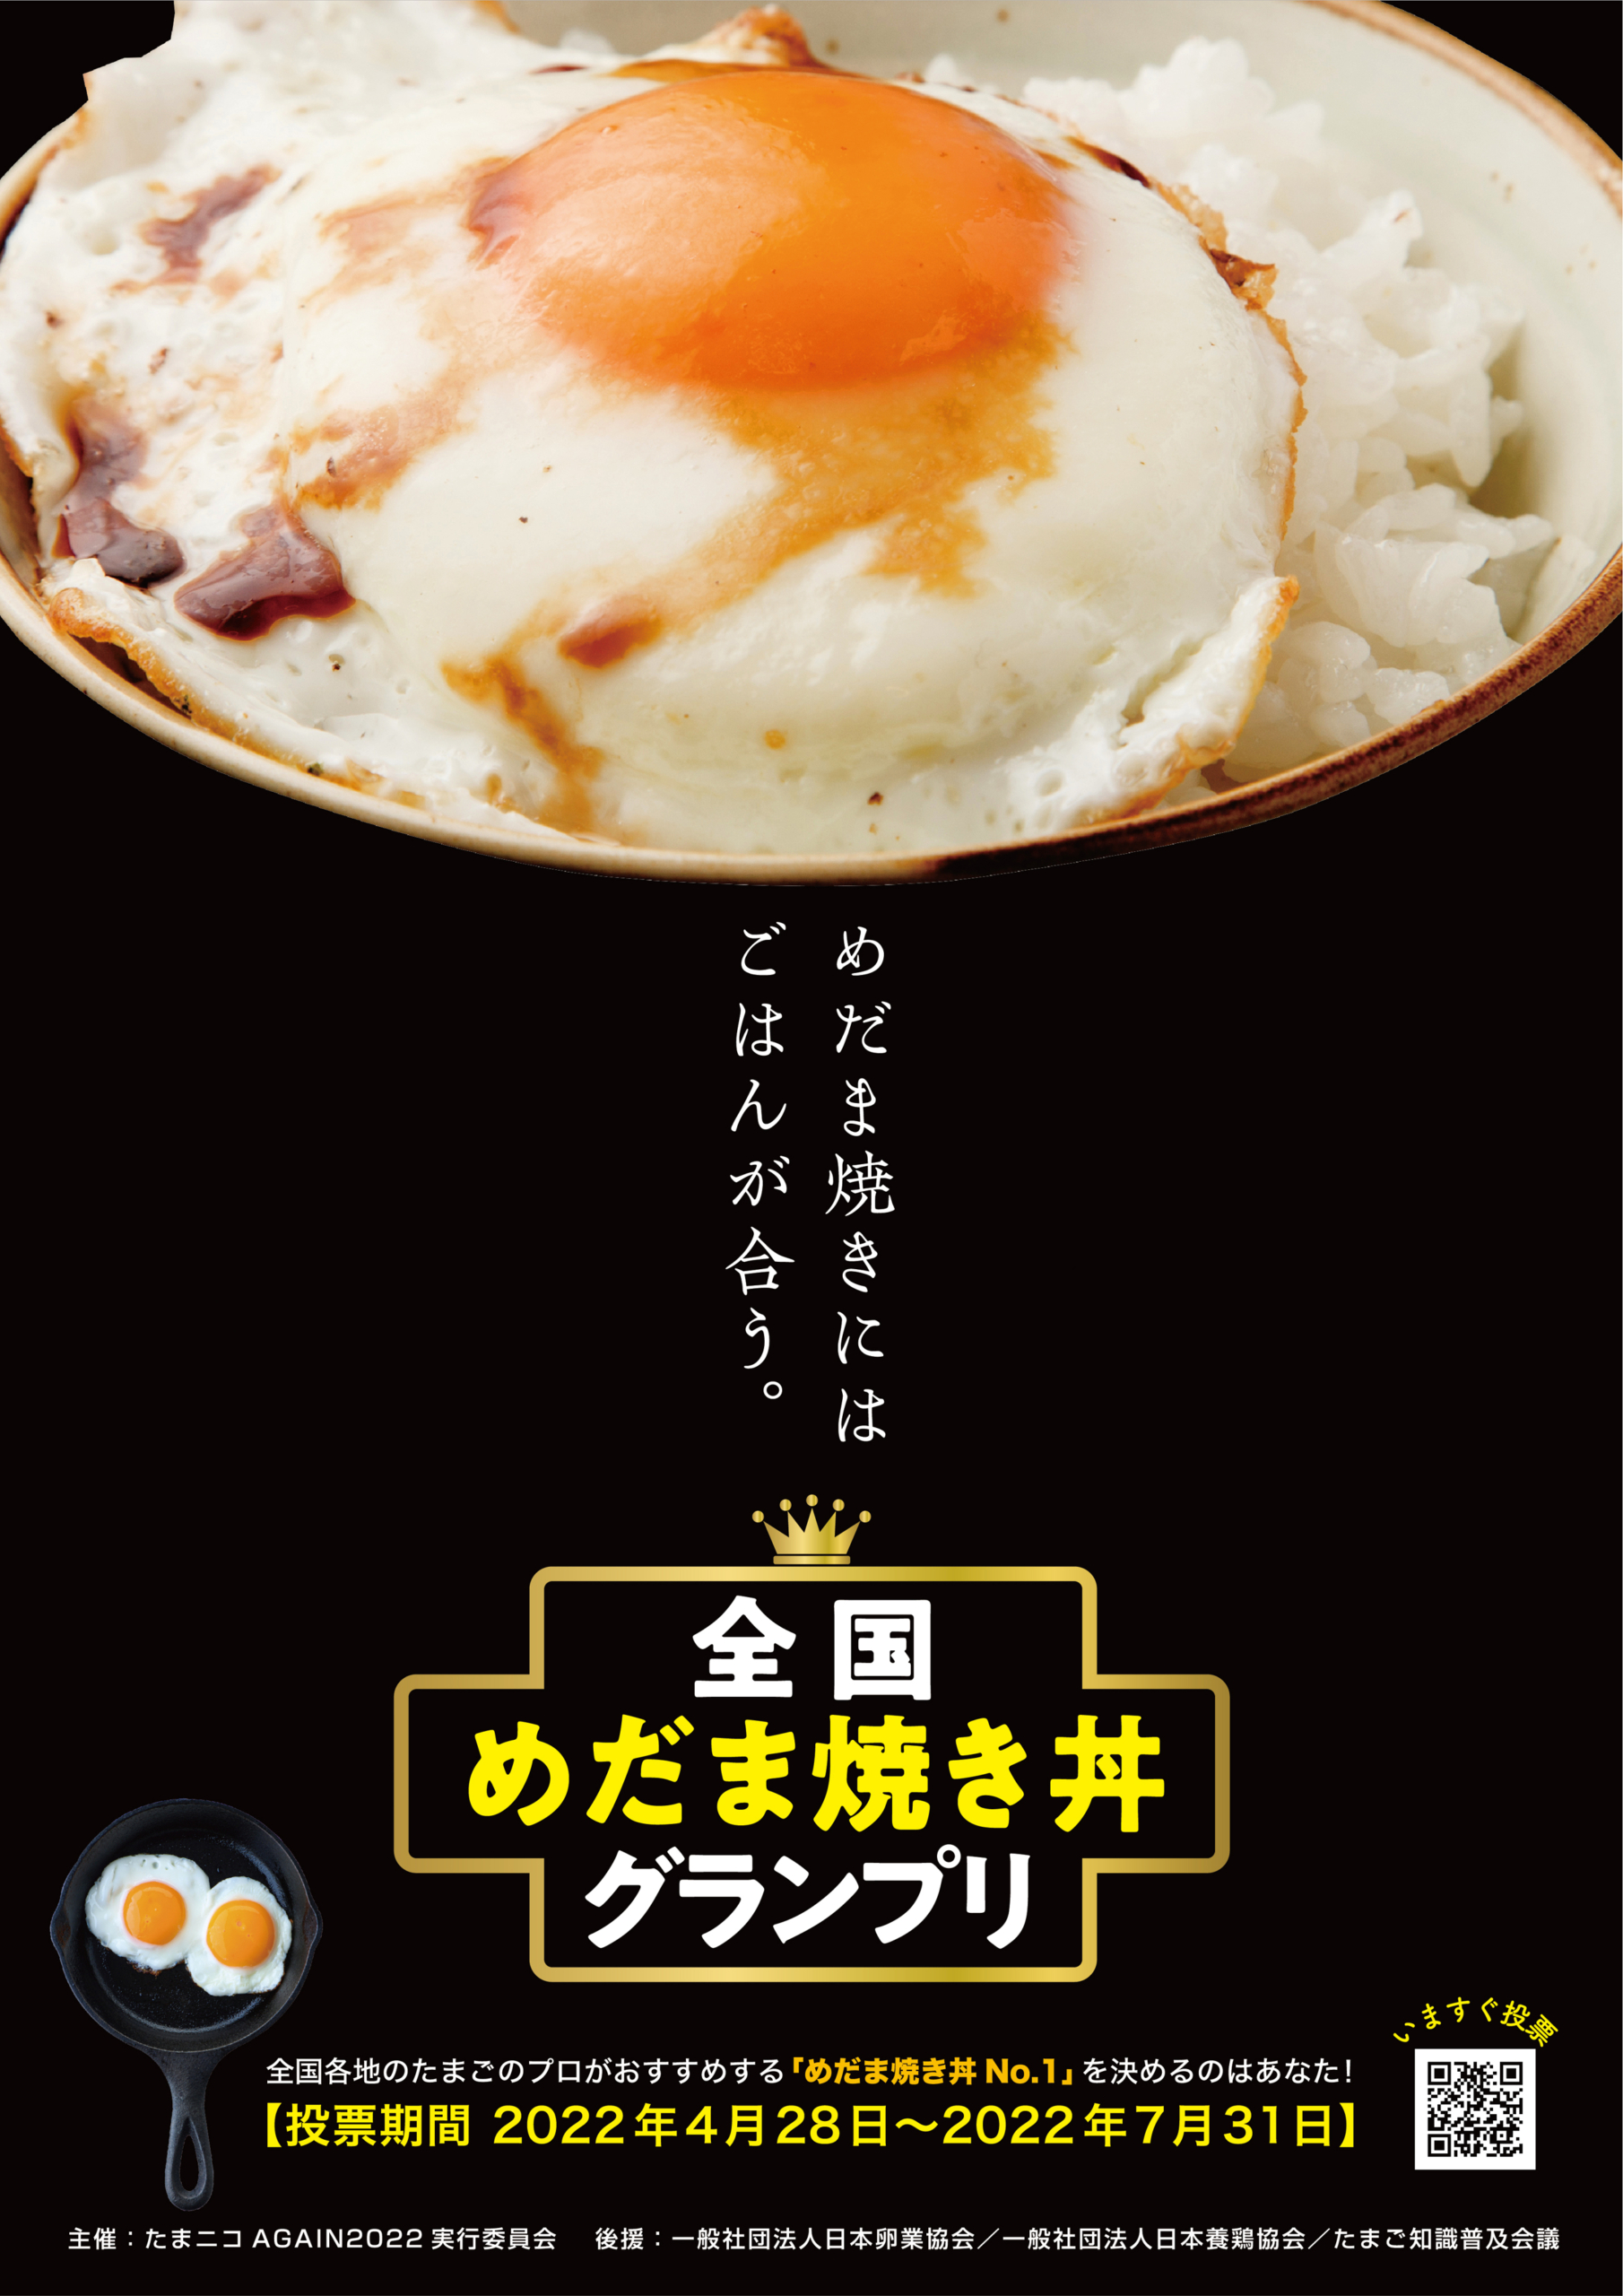 “たまごのプロ”が選んだ飲食店の『めだま焼き丼』が一堂に　
全国の消費者が選ぶ日本一のめだま焼きのせごはん　
4月28日投票開始！